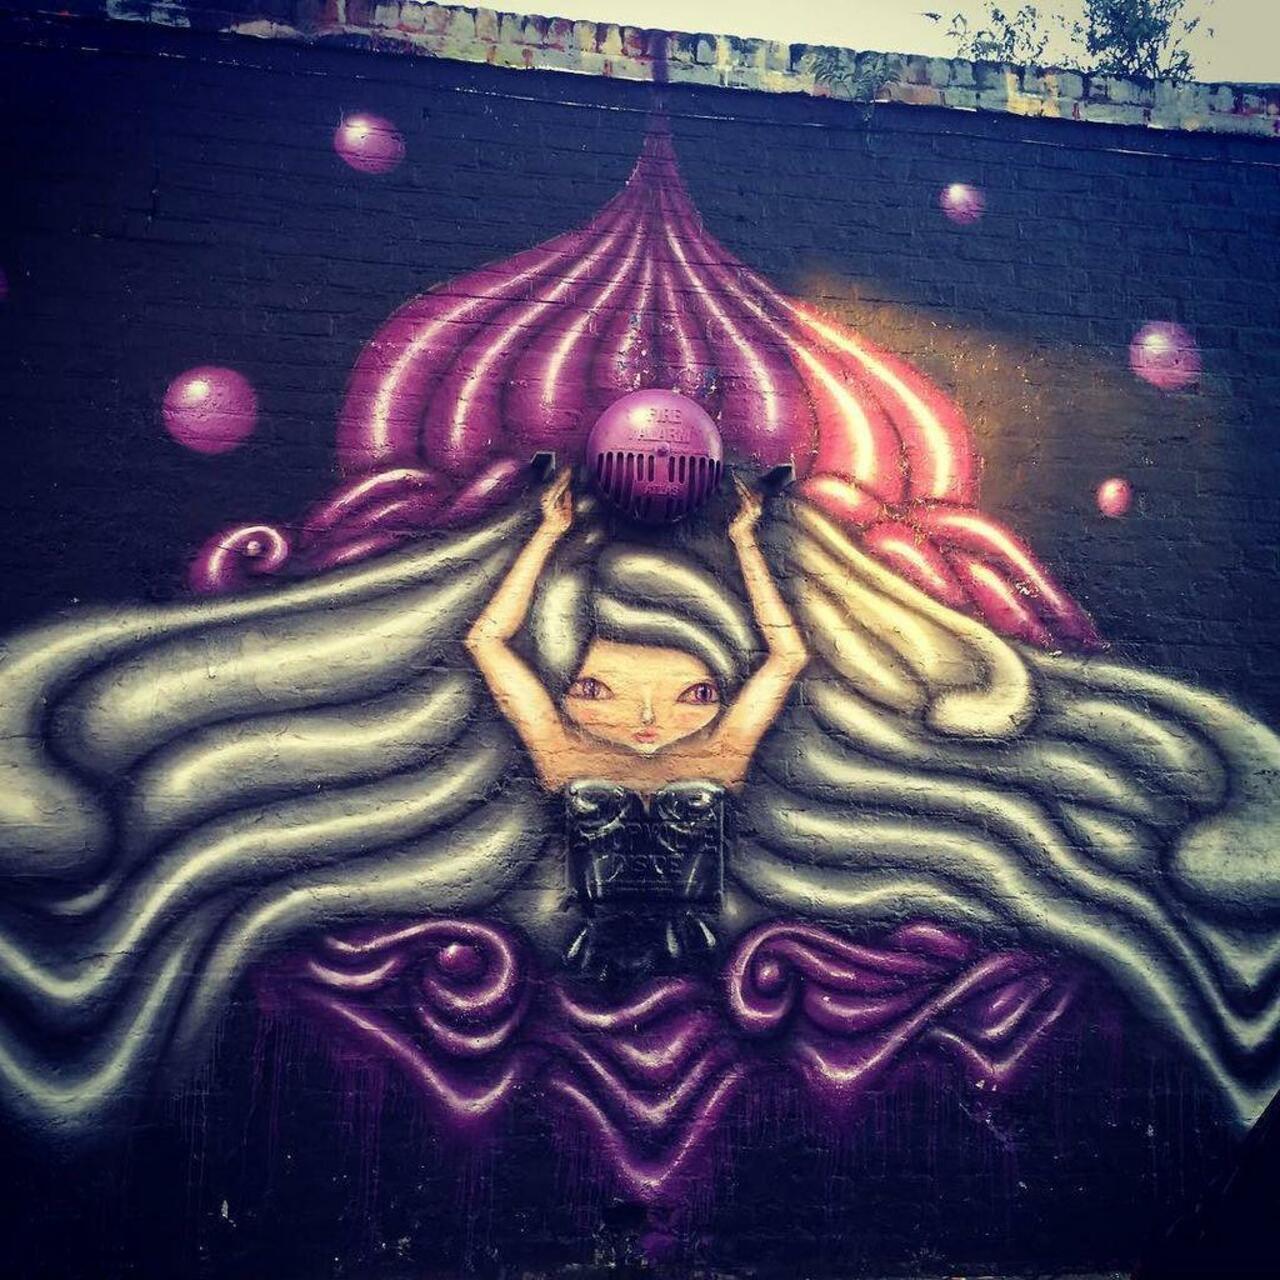 #graffitiporn  #wallporn #mural  #murales  #graffitiporn #lovestreetart #streetart #graffiti #london #loveshoreditc… http://t.co/WaijM3W31i